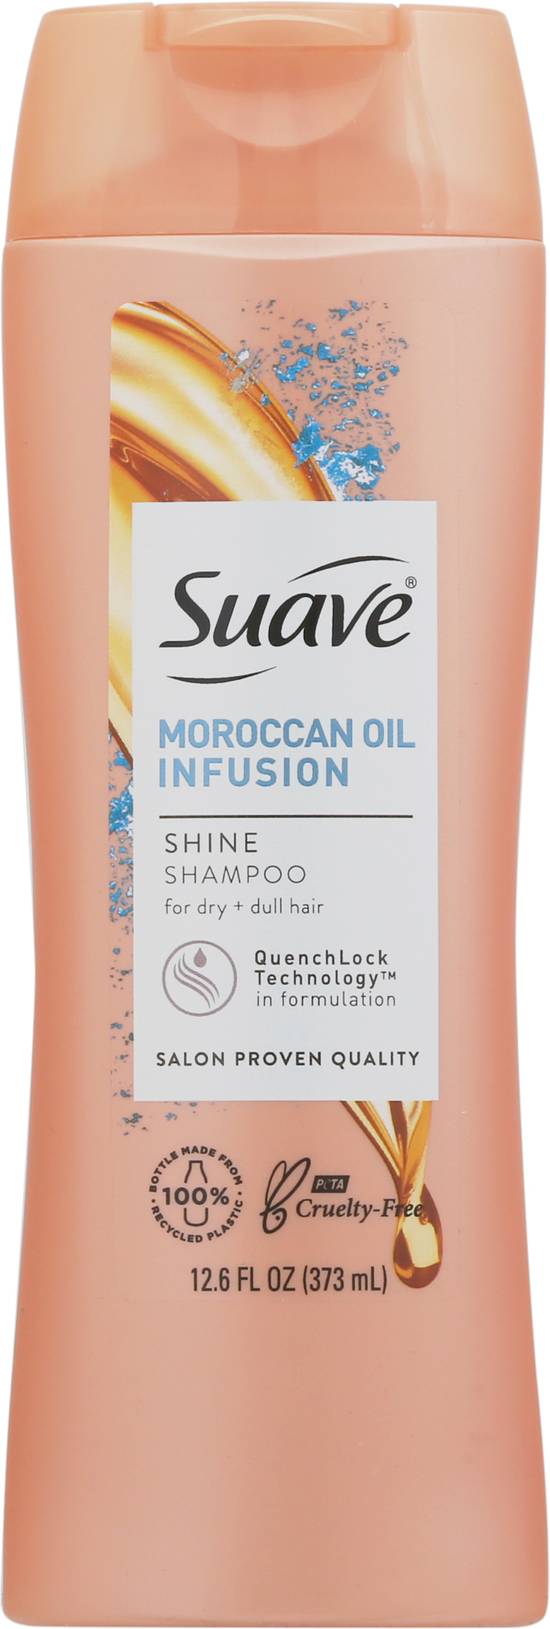 Suave Moroccan Oil Infusion Shine Shampoo